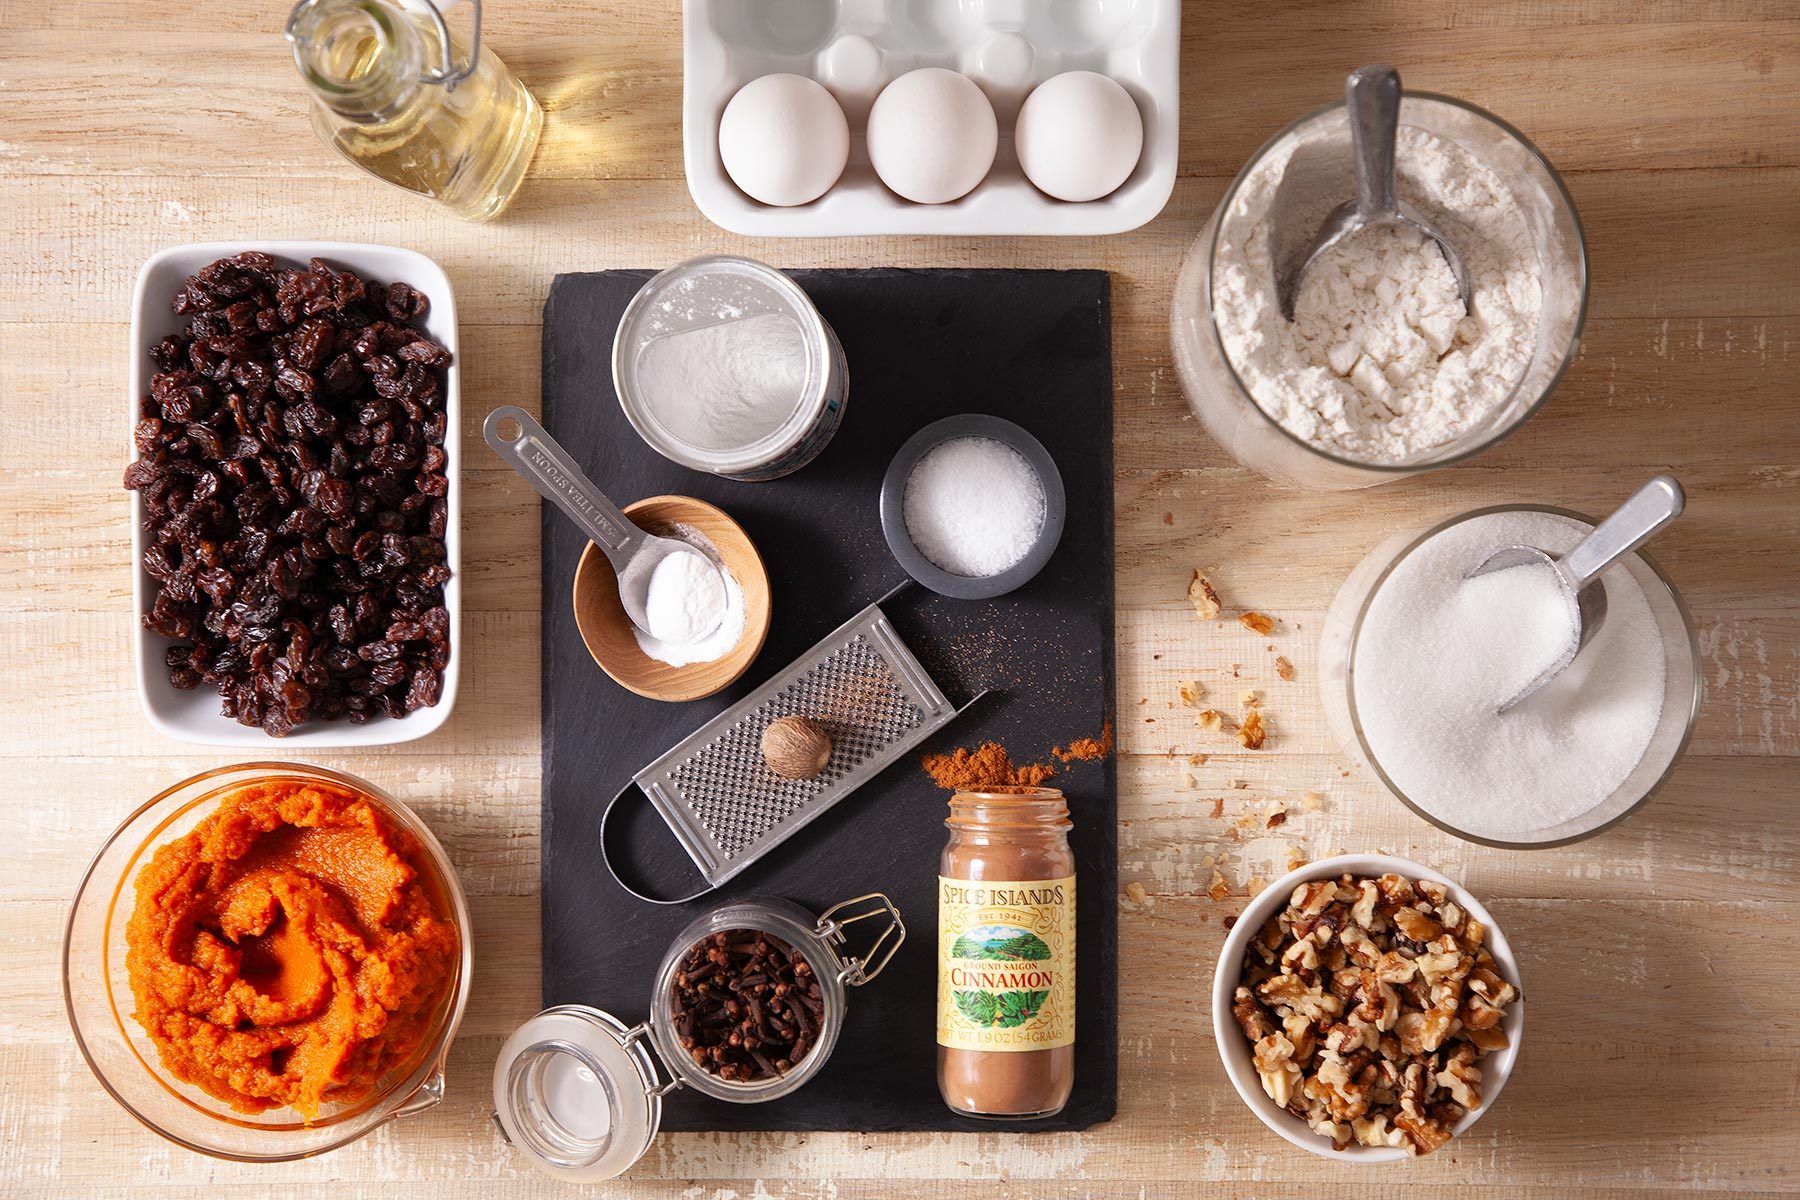 Ingredients for pumpkin muffin